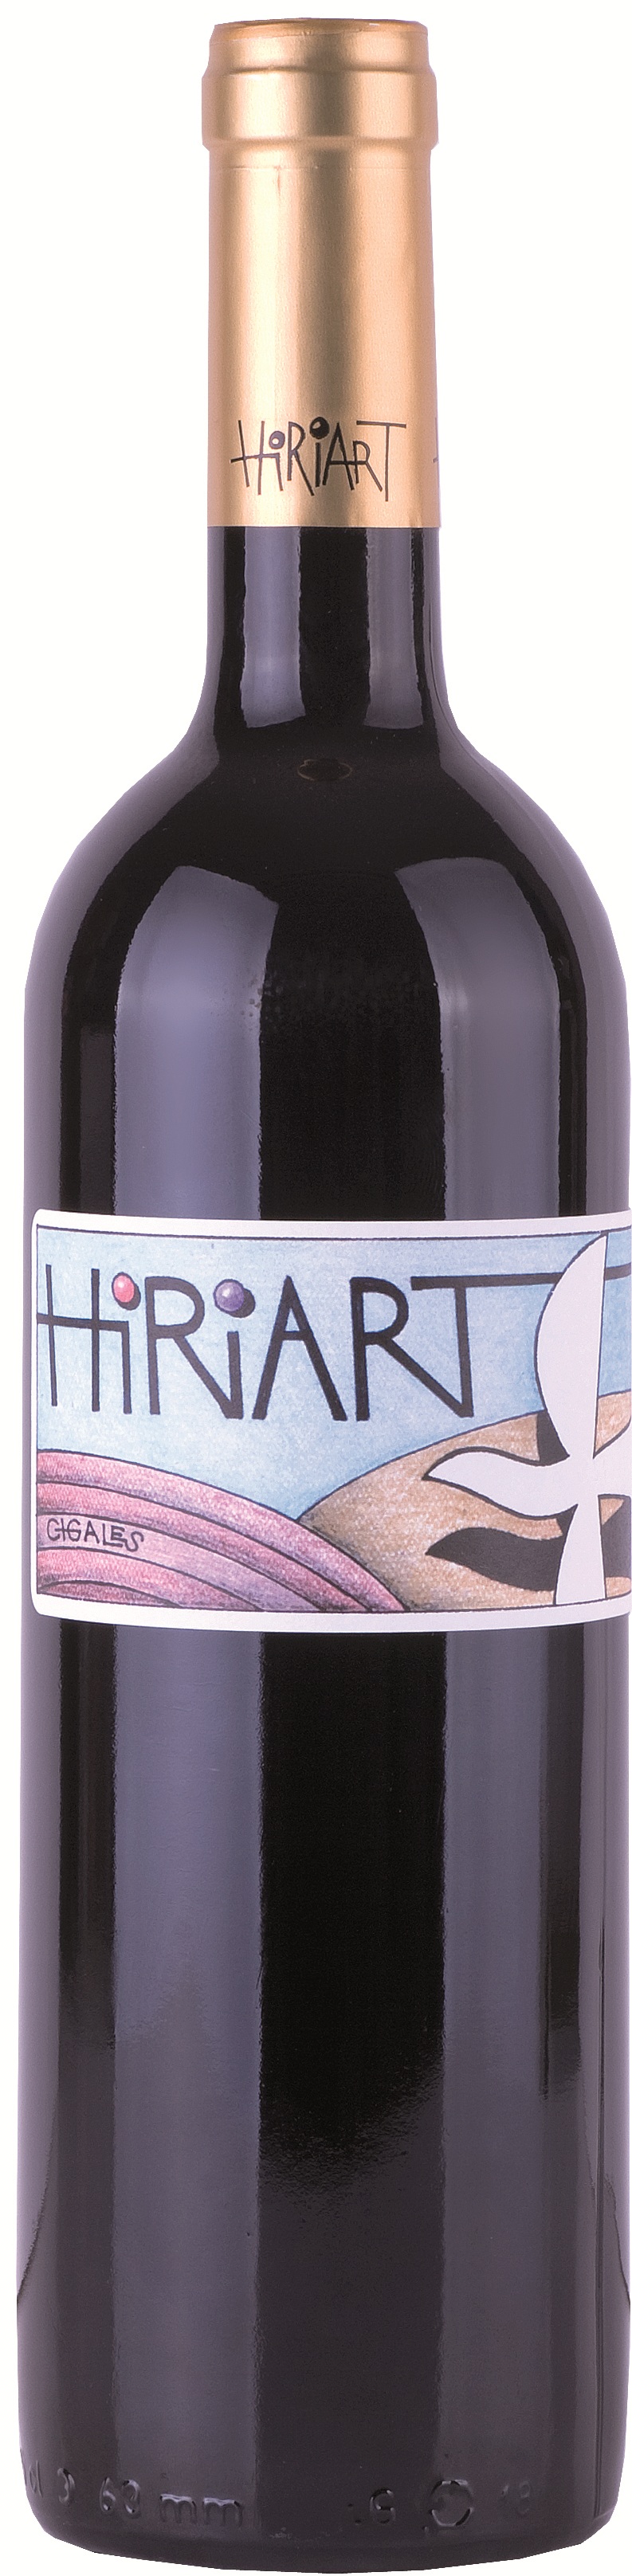 Logo Wine Hiriart Tinto Crianza